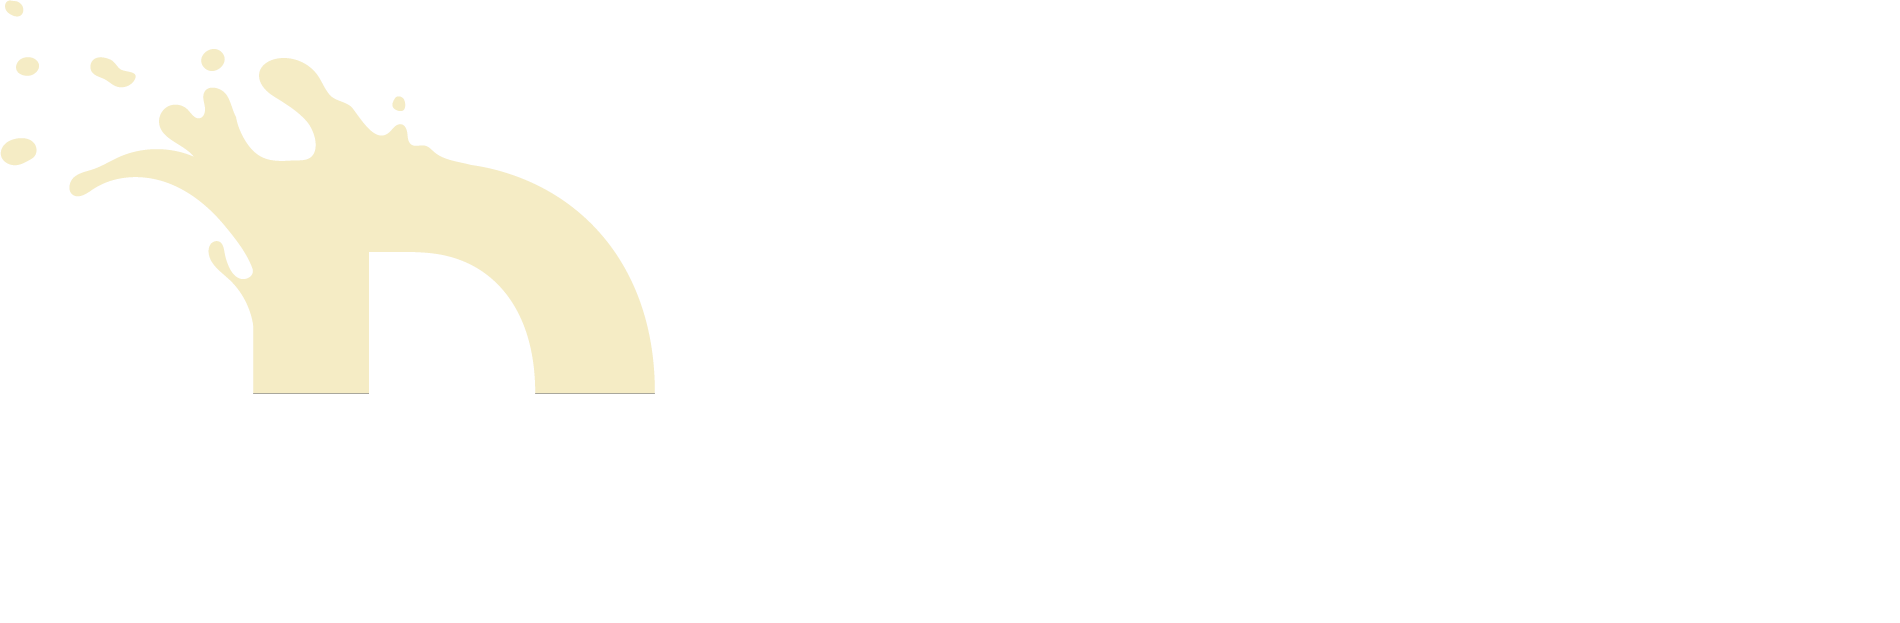 Dairysafe logo